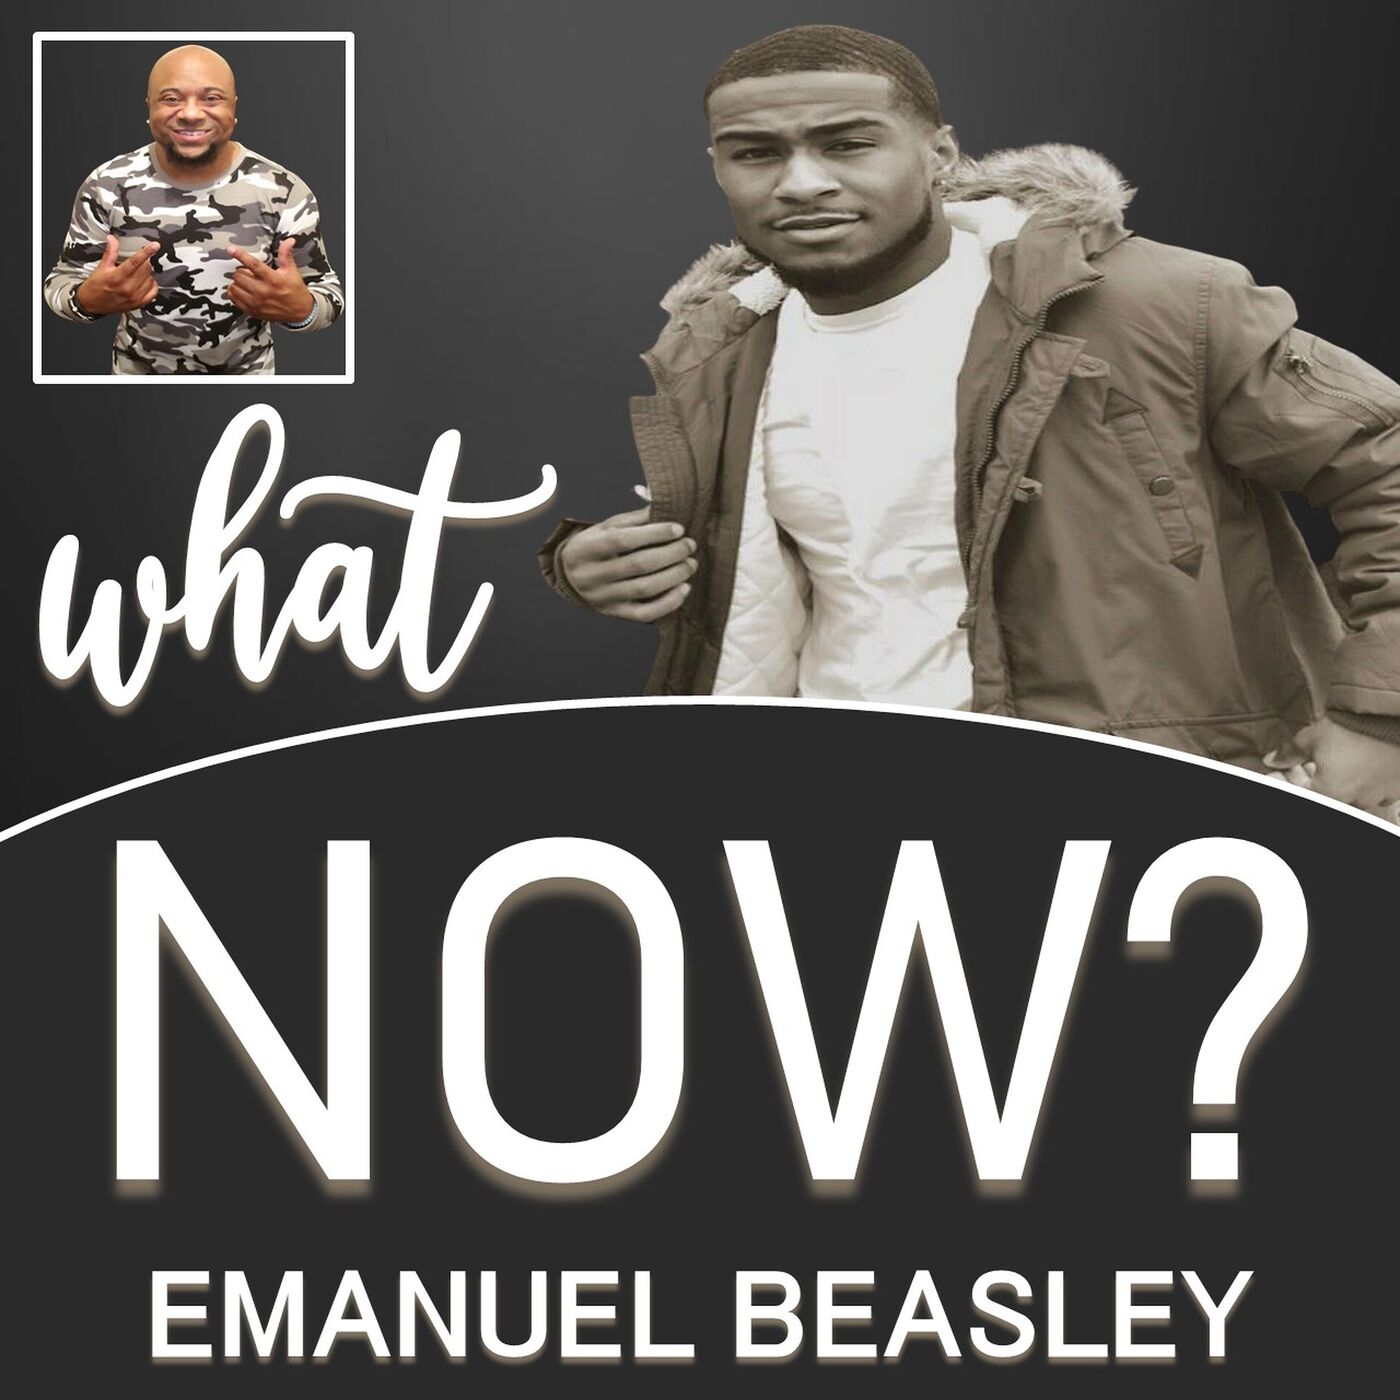 S3 E6: Emanuel Beasley